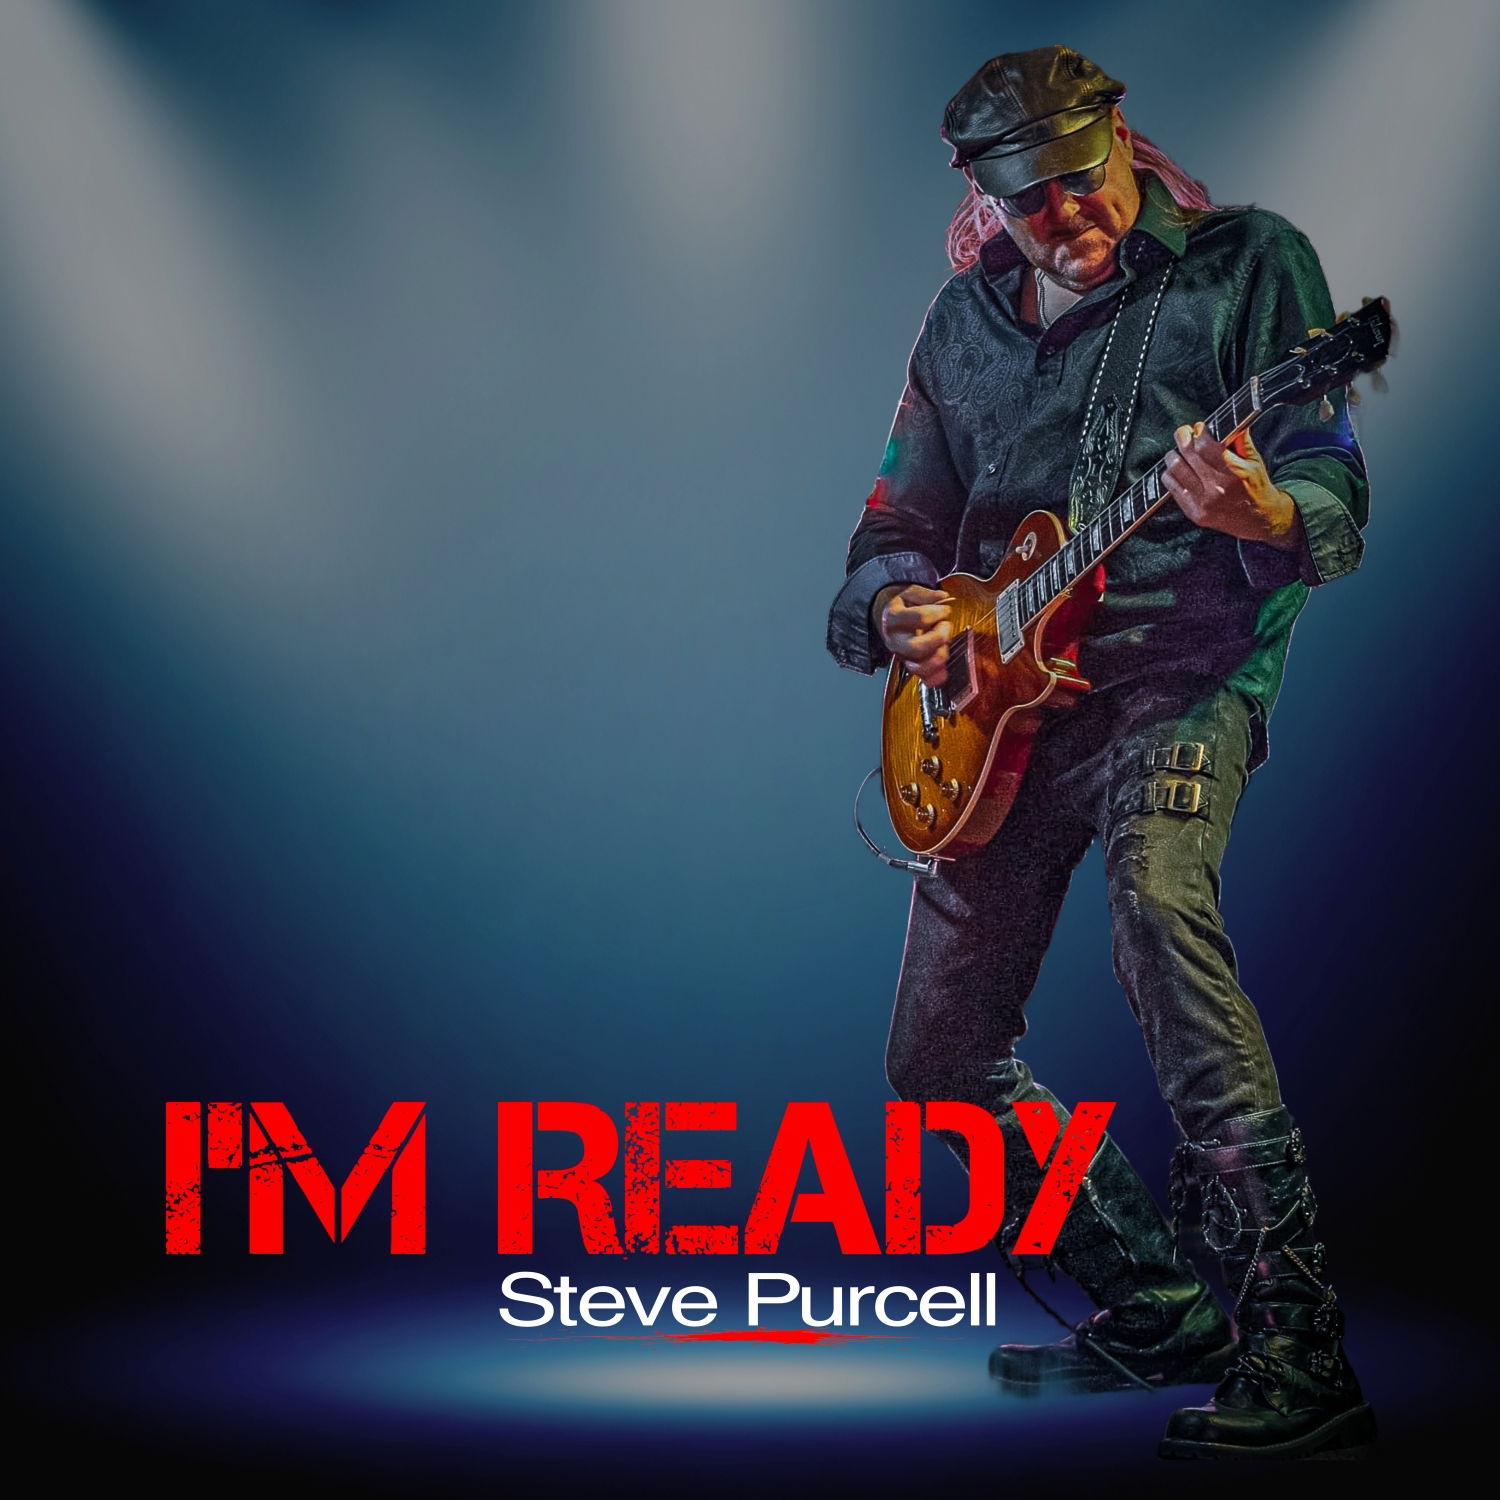 New single "I'm Ready" coming soon